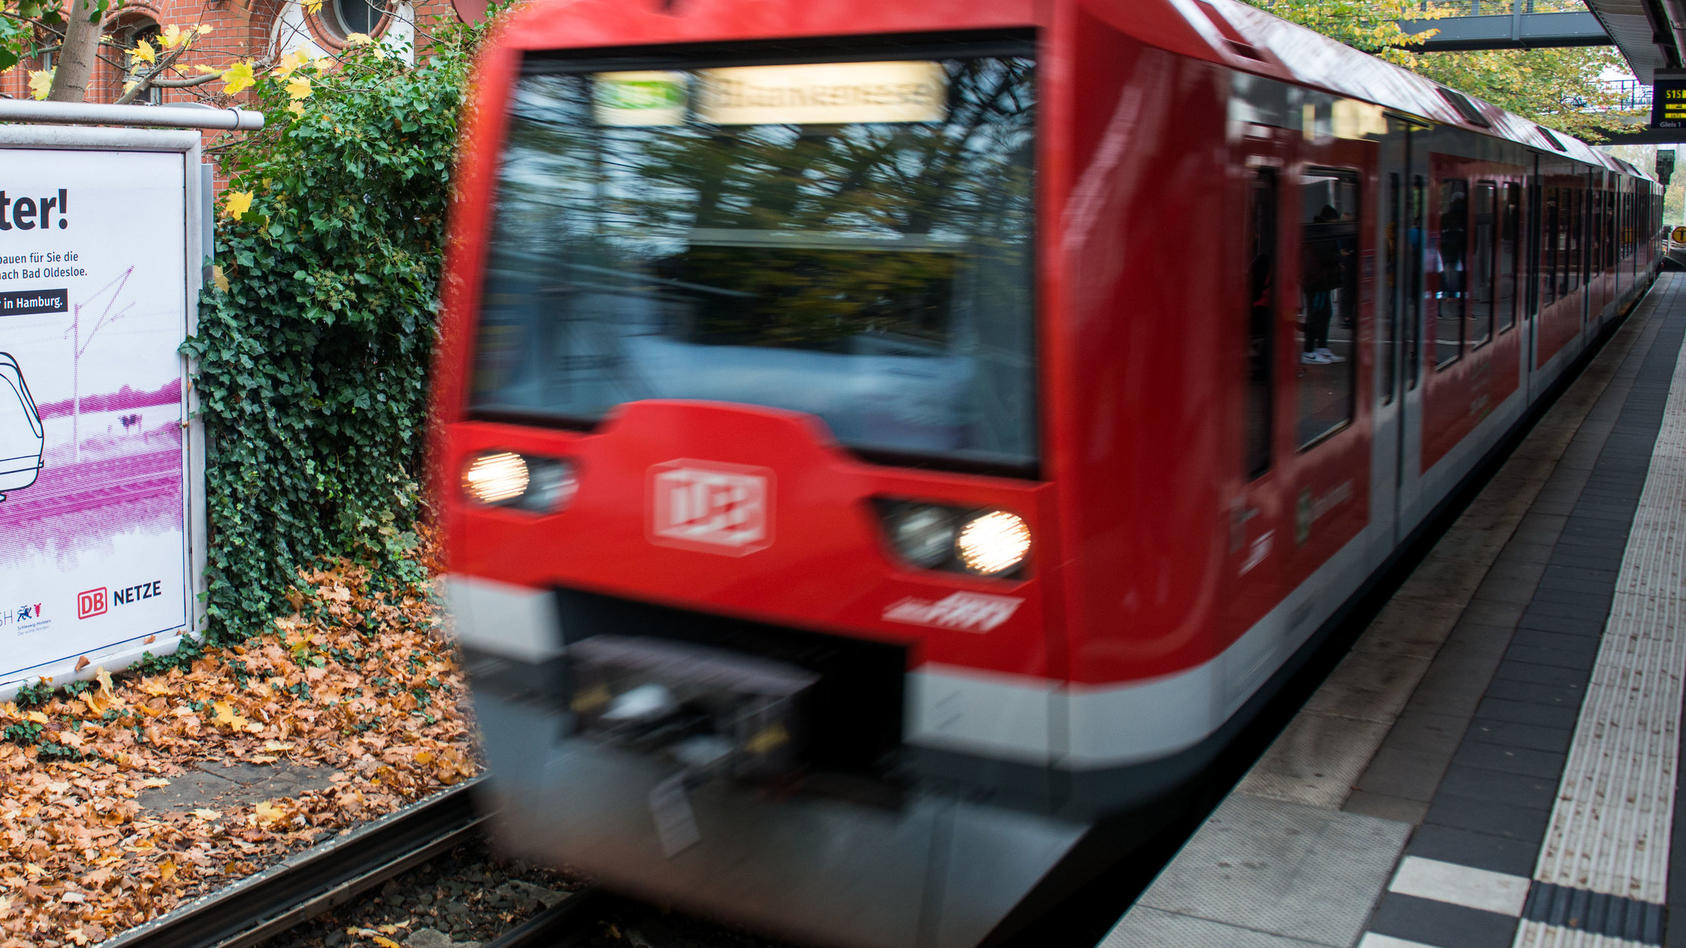 ARCHIV - 09.11.2020, Hamburg: Eine S-Bahn fährt in den Bahnhof Hasselbrook ein, in dem ein Plakat mit der Aufschrift "S4 fährt öfter!" hängt. Die Bauvorbereitungen für die neue S-Bahn-Linie S4 (Ost) zwischen Hamburg-Altona und Bad Oldesloe haben bego